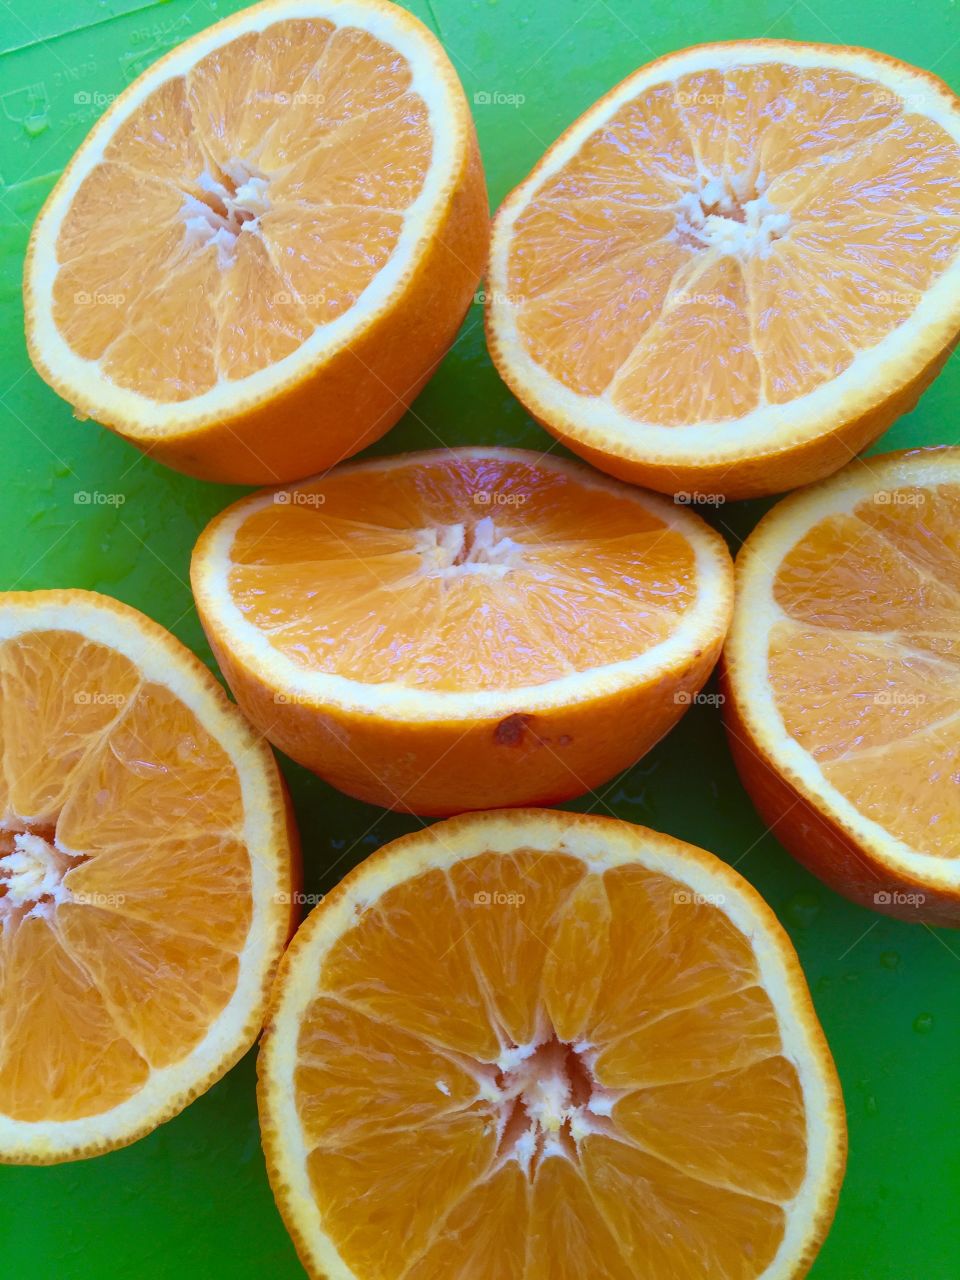 Orange. Sliced oranges on green surface